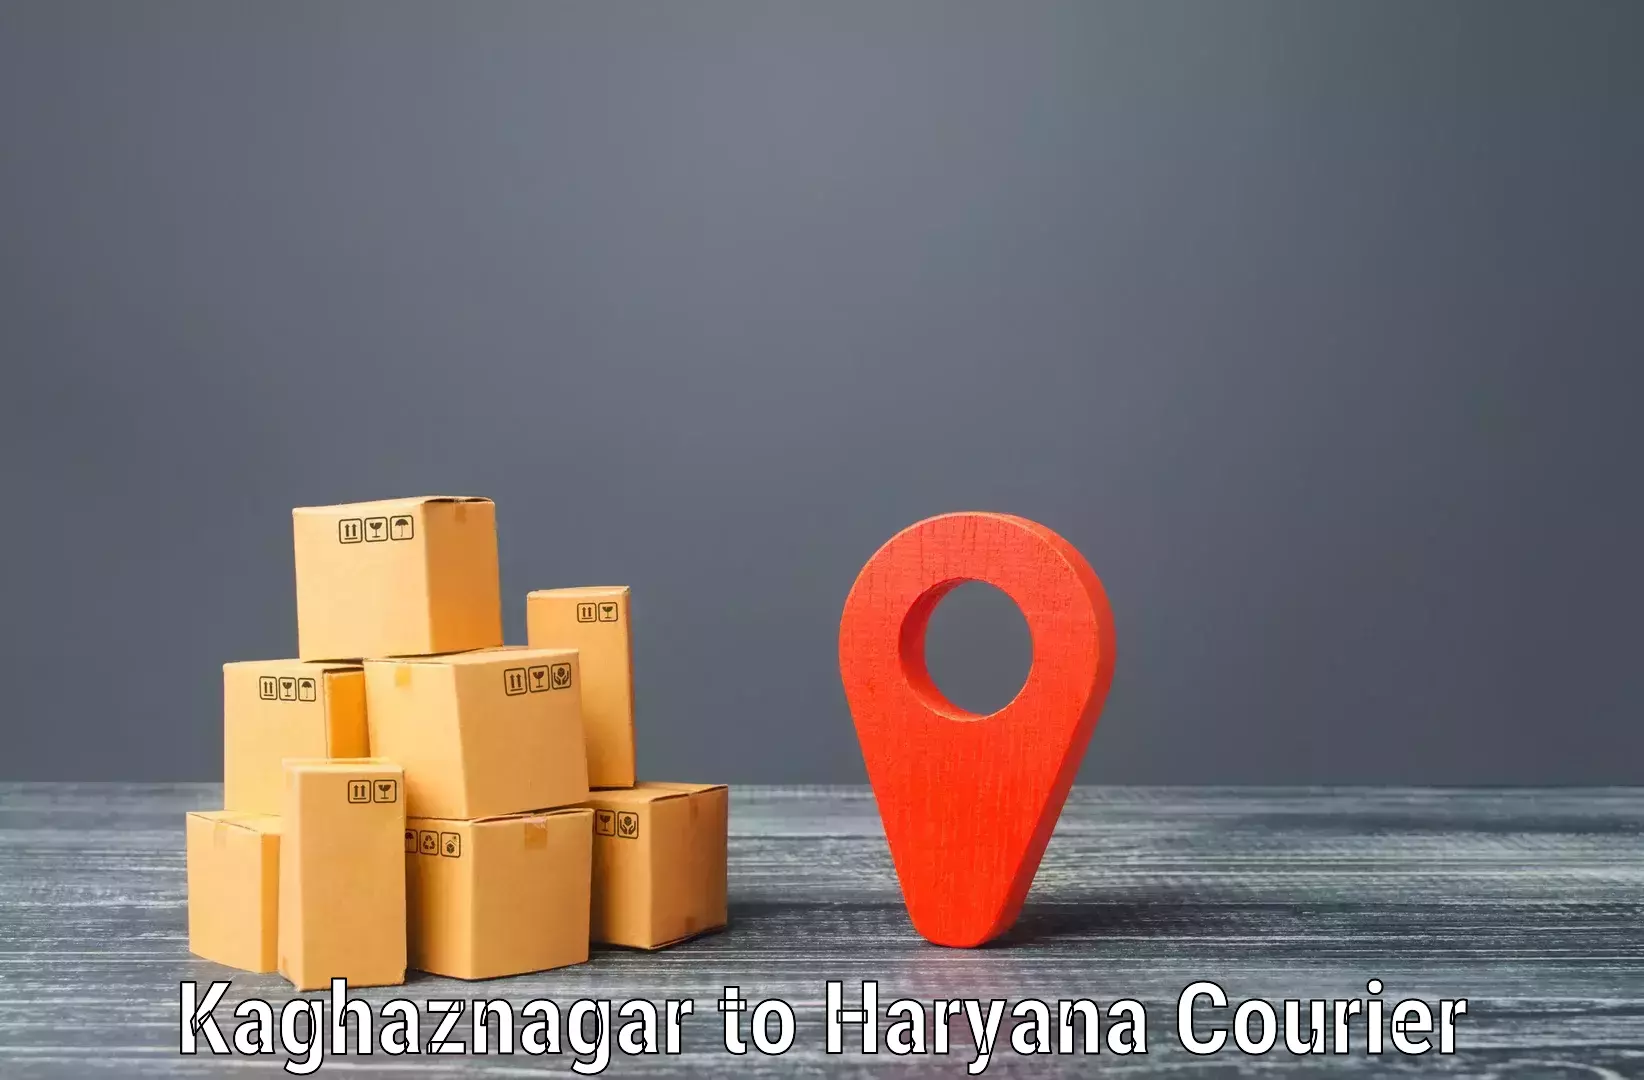 Express package handling Kaghaznagar to Gurgaon